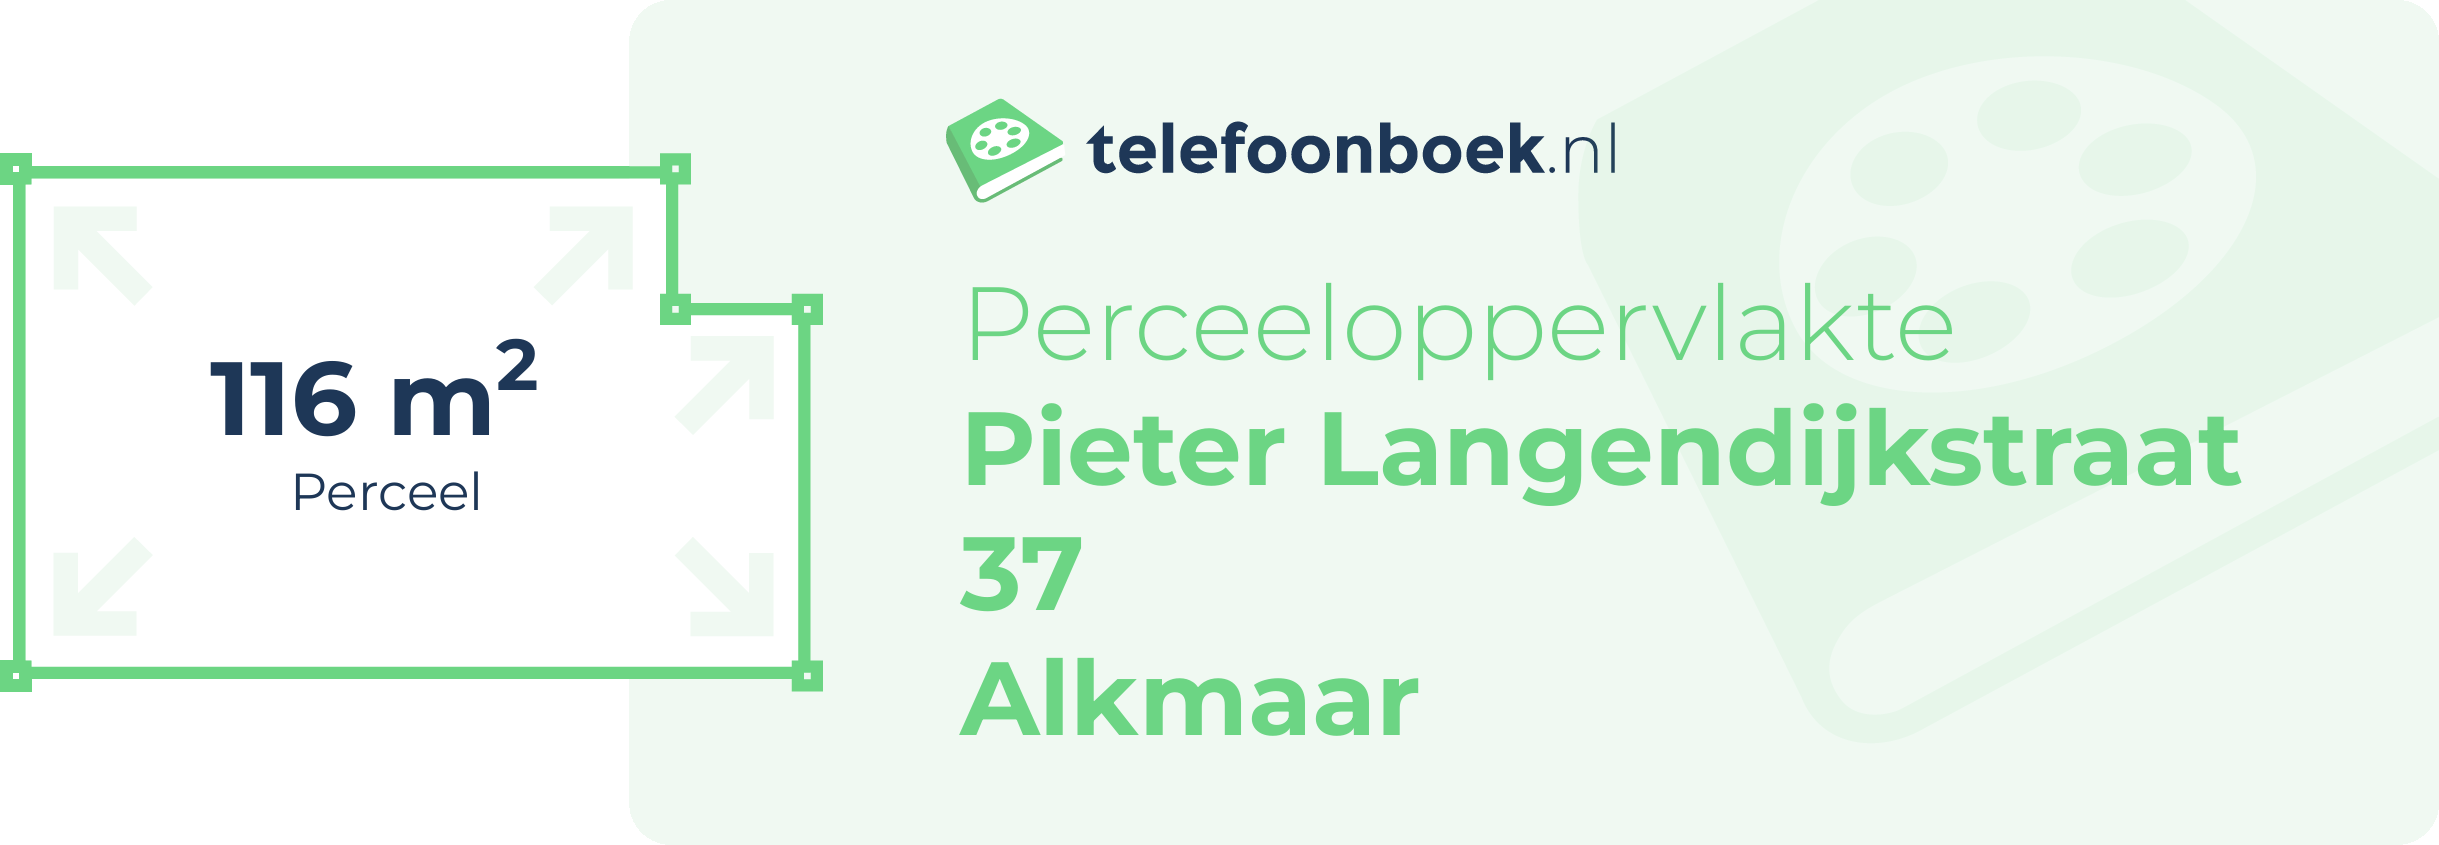 Perceeloppervlakte Pieter Langendijkstraat 37 Alkmaar